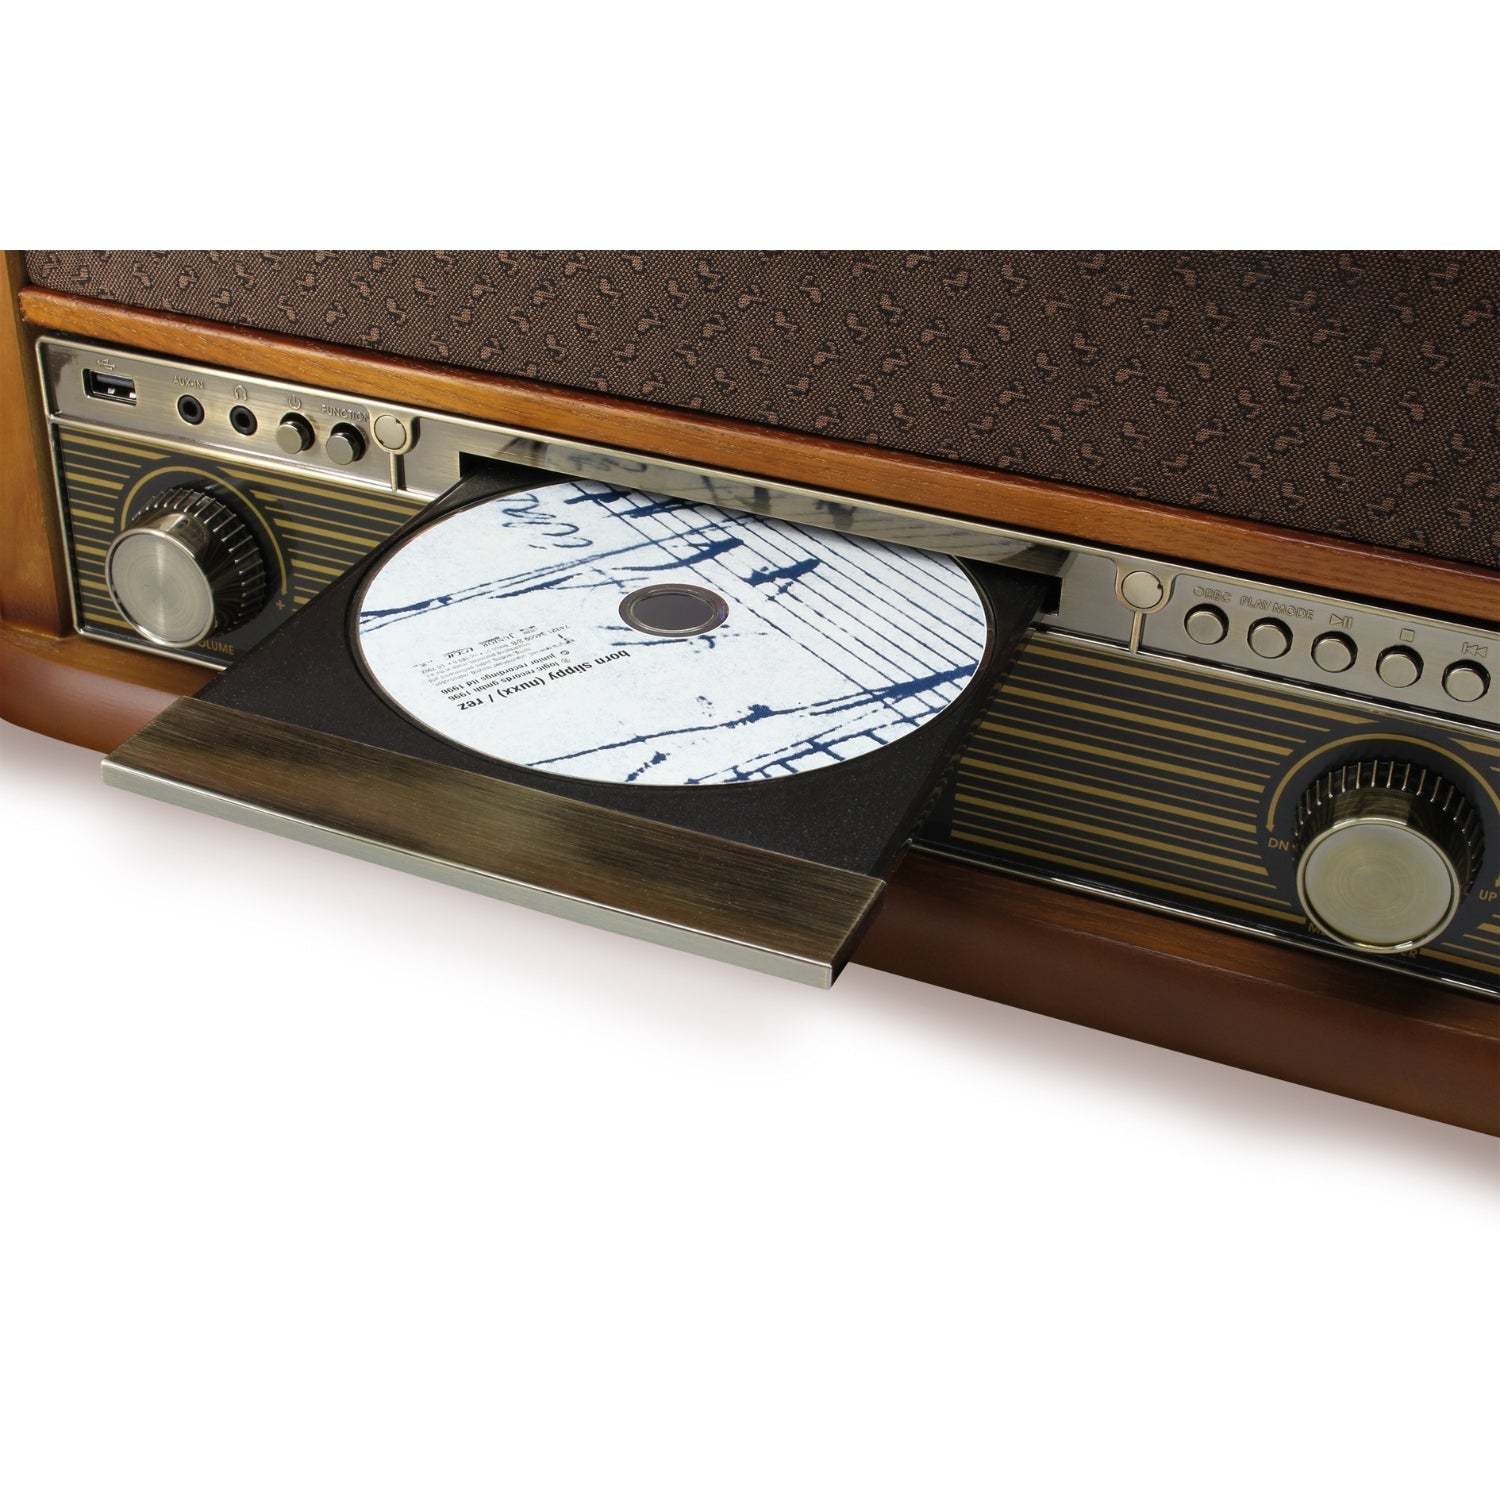 Soundmaster NR560 système stéréo nostalgique système compact platine vinyle lecteur CD MP3 encodage USB lecteur cassette connexion 75 Ohm